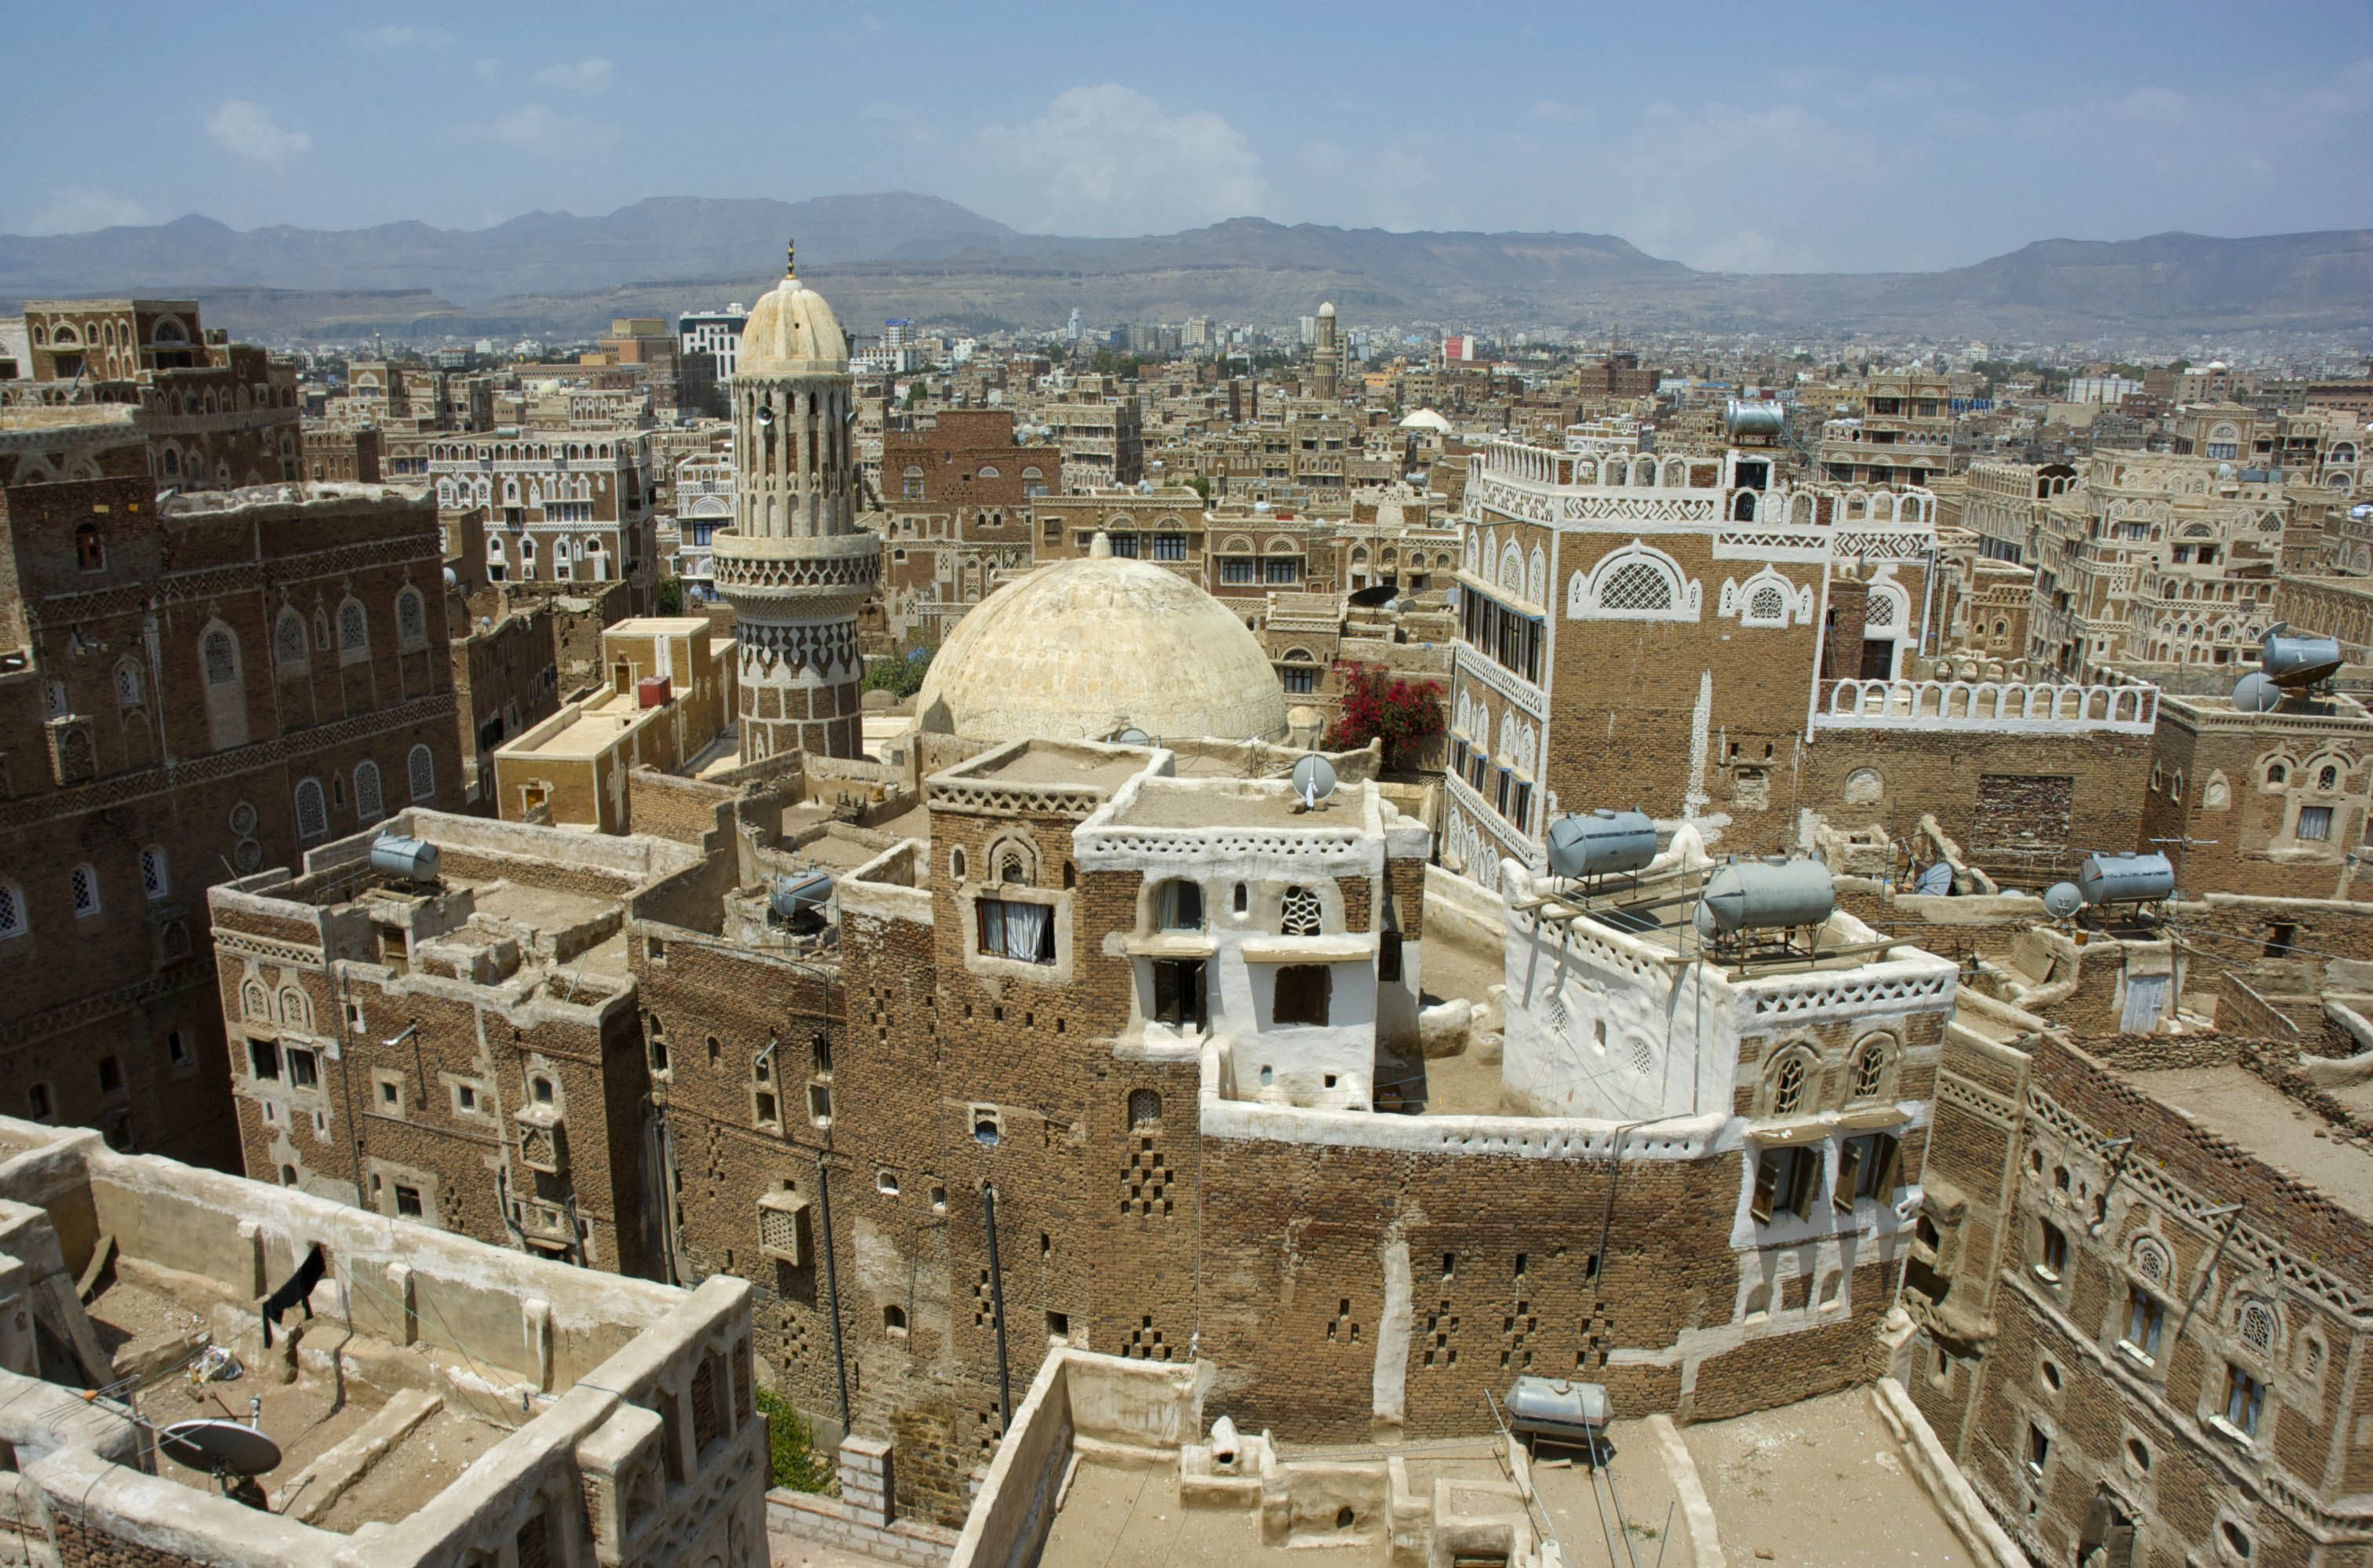 The city Sana'a in Yemen
